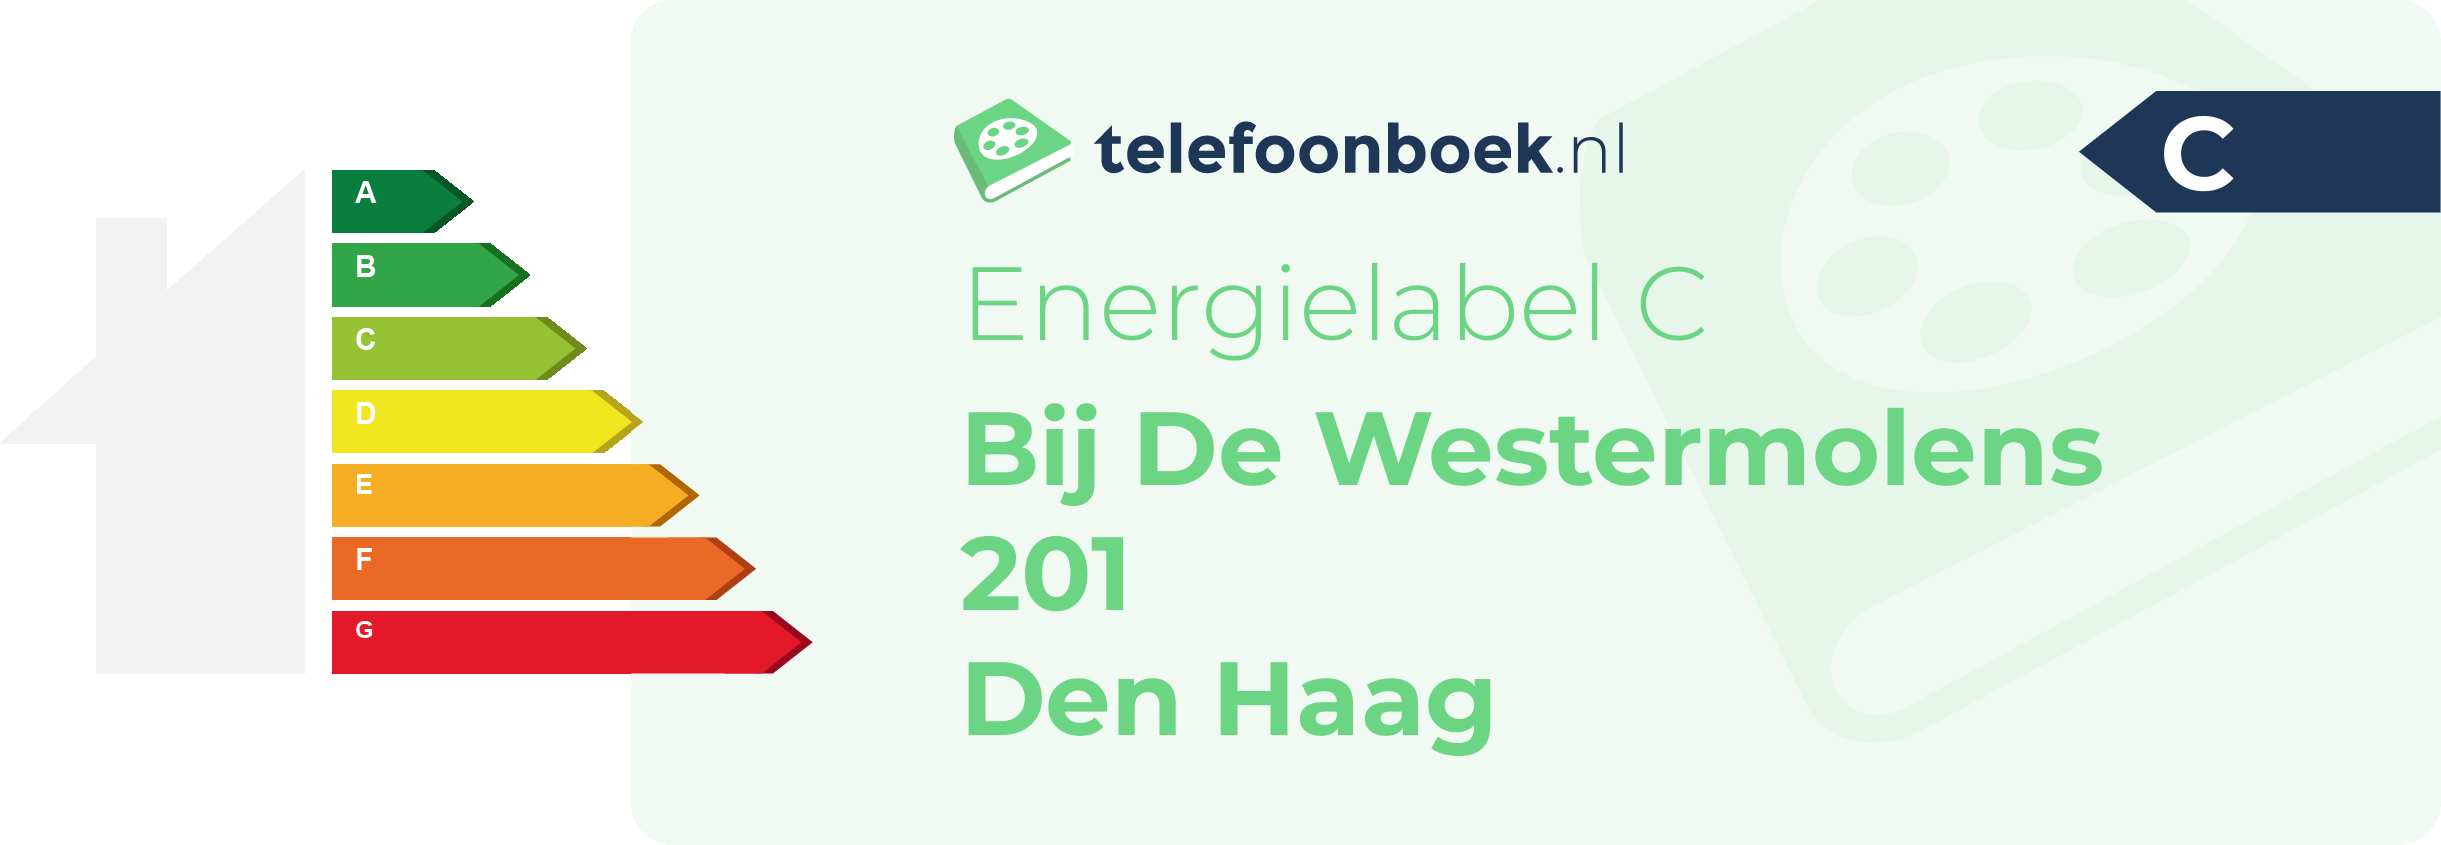 Energielabel Bij De Westermolens 201 Den Haag